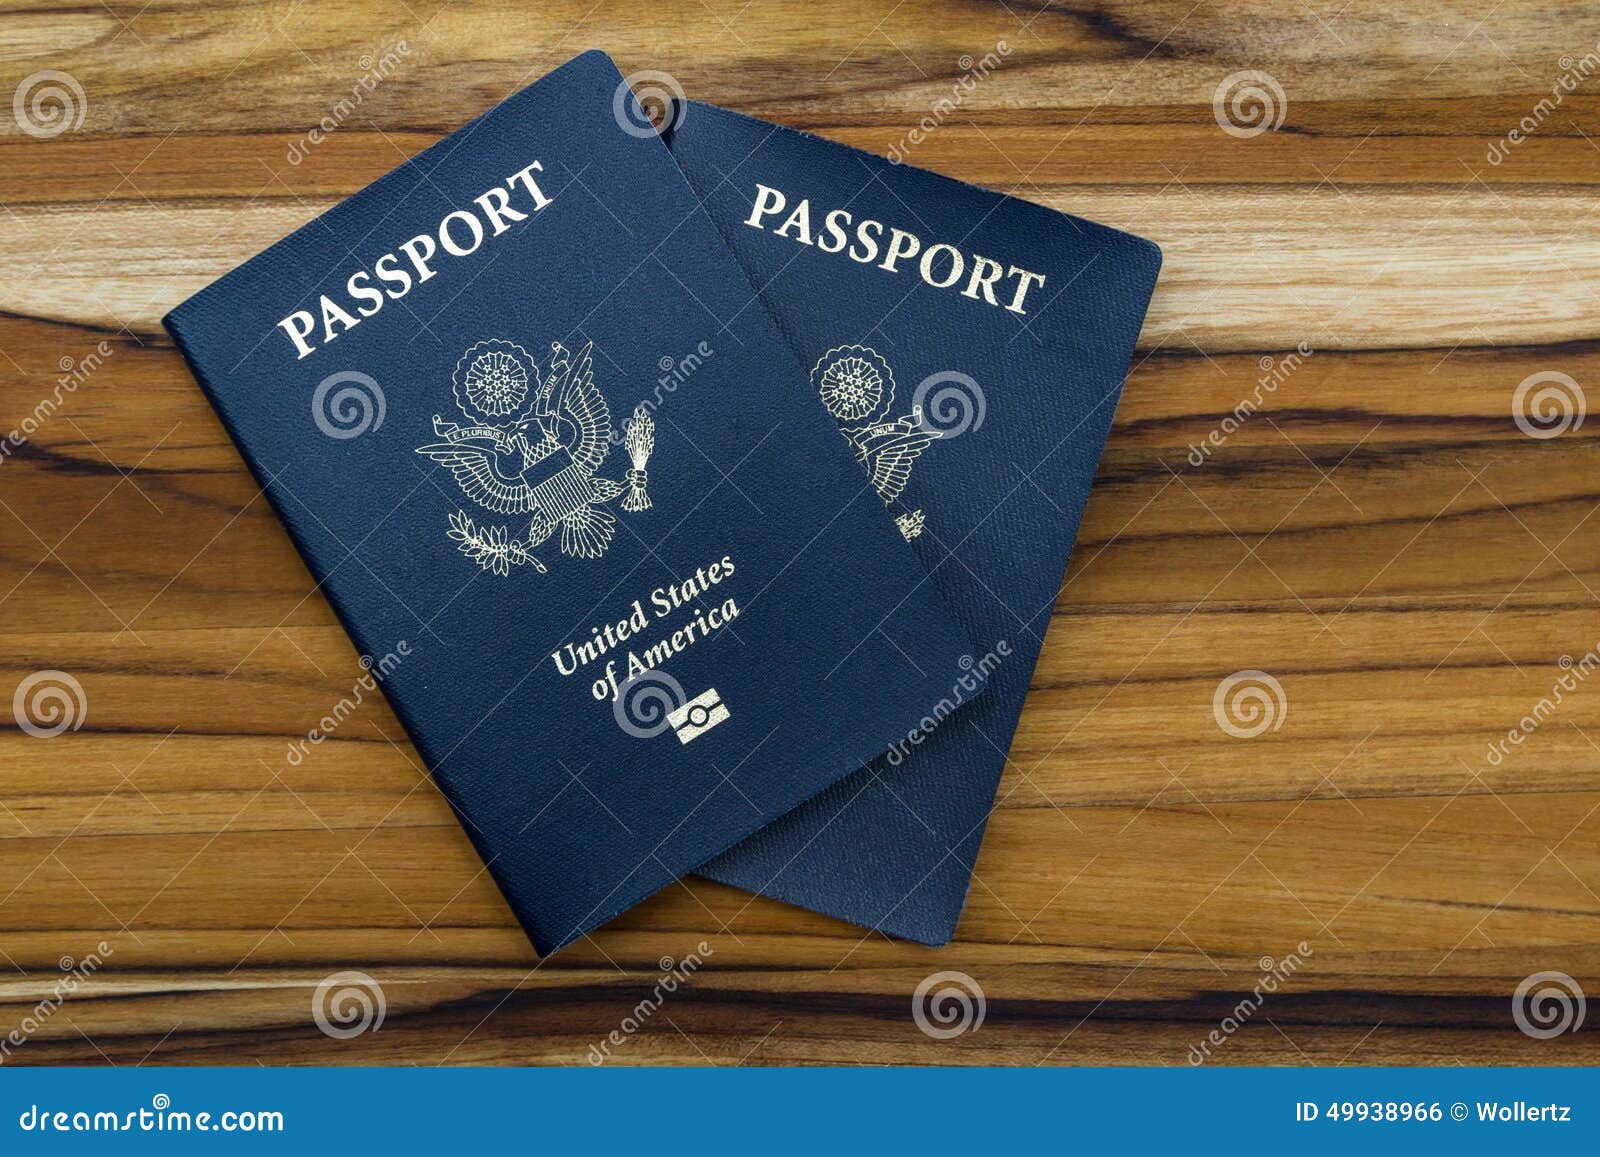 美國護照變化即將到來 你需要知道的幾件事 | 更新護照 | 護照延期 | 護照申請 | 大紀元